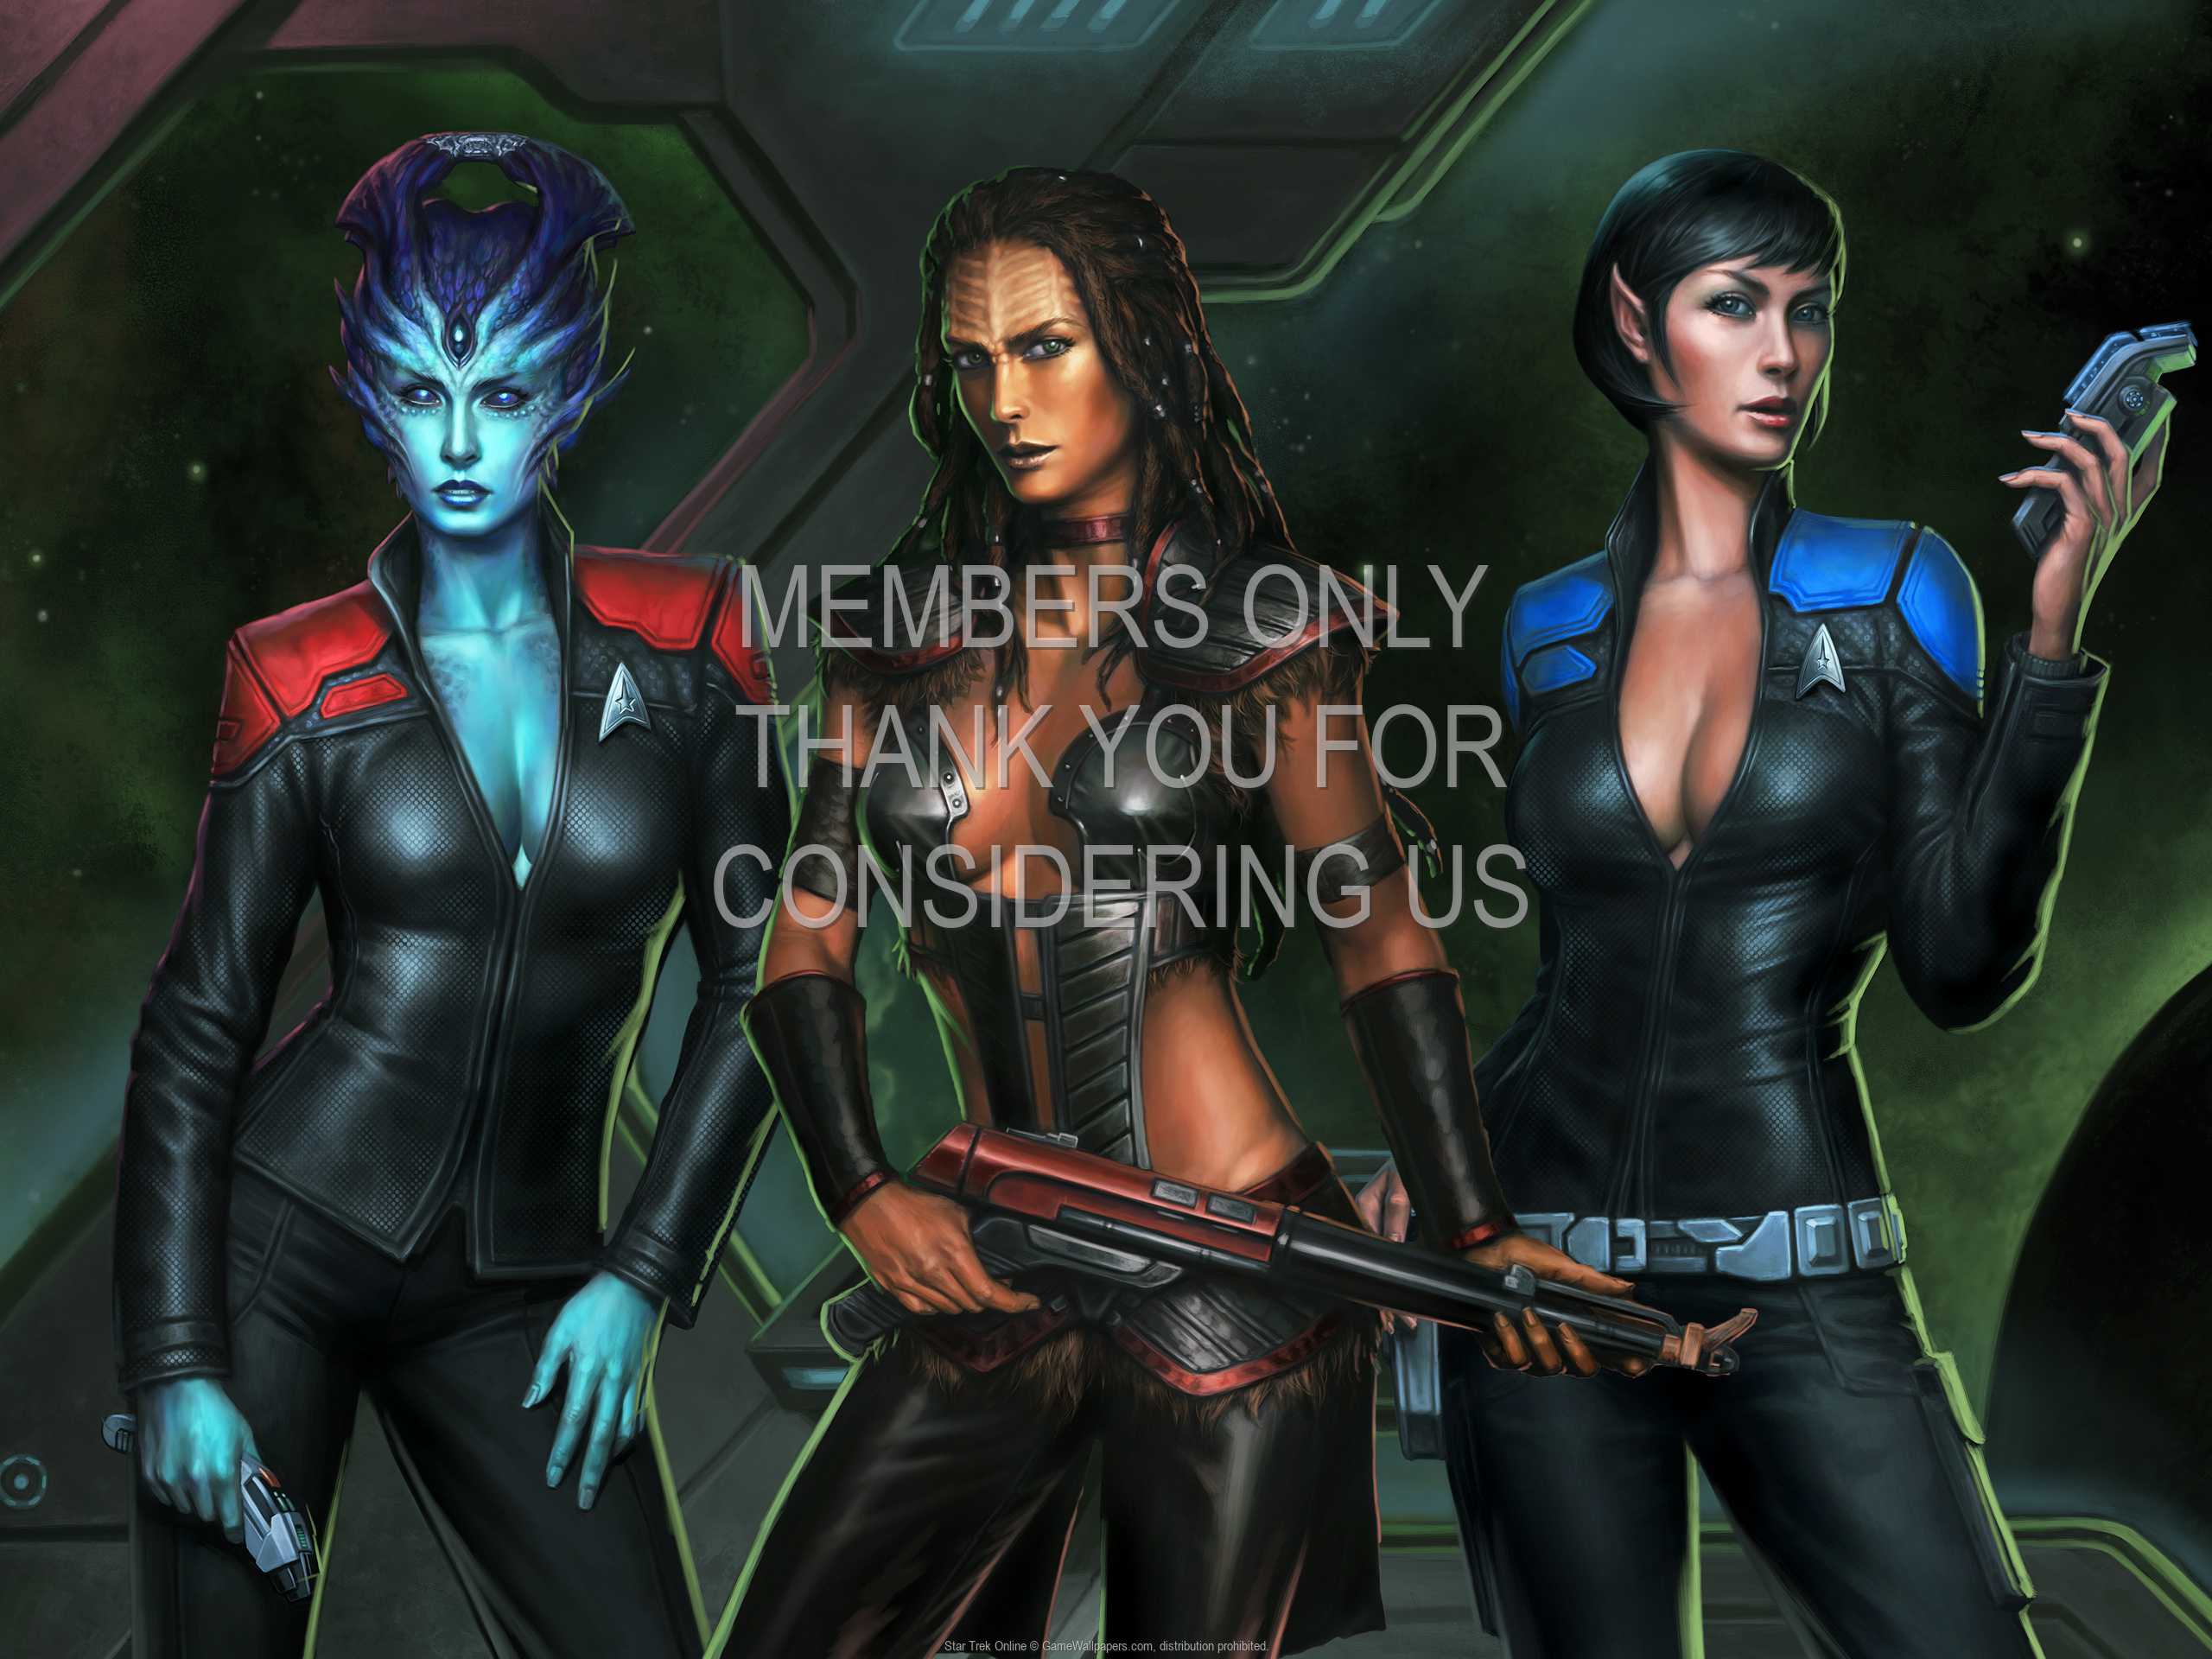 Star Trek Online 1080p Horizontal Mobile wallpaper or background 06